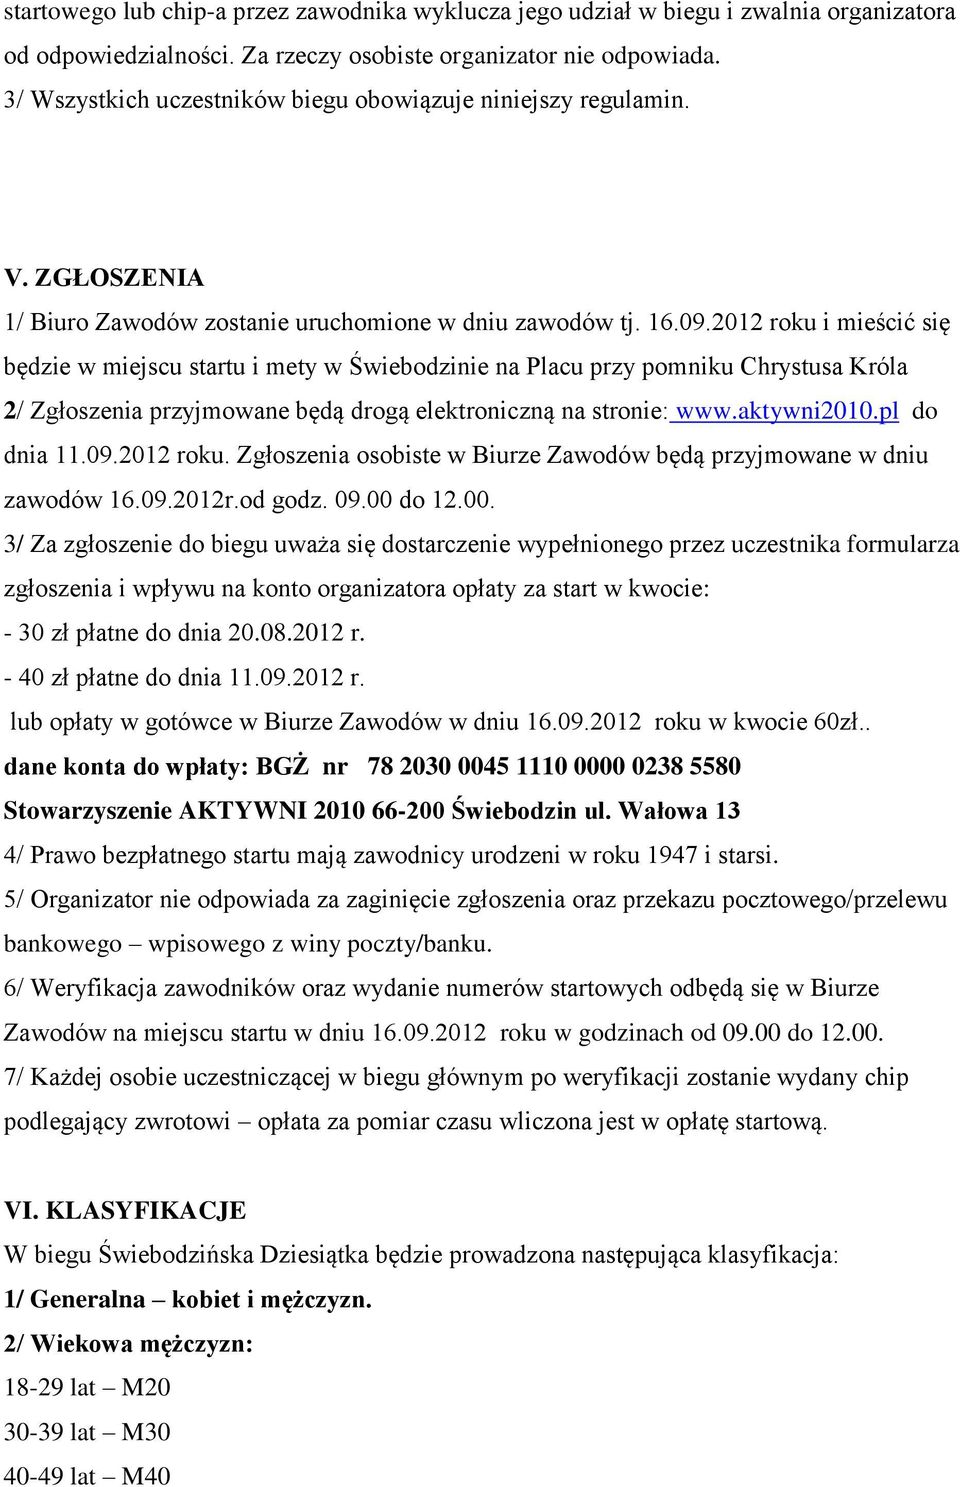 2012 roku i mieścić się będzie w miejscu startu i mety w Świebodzinie na Placu przy pomniku Chrystusa Króla 2/ Zgłoszenia przyjmowane będą drogą elektroniczną na stronie: www.aktywni2010.